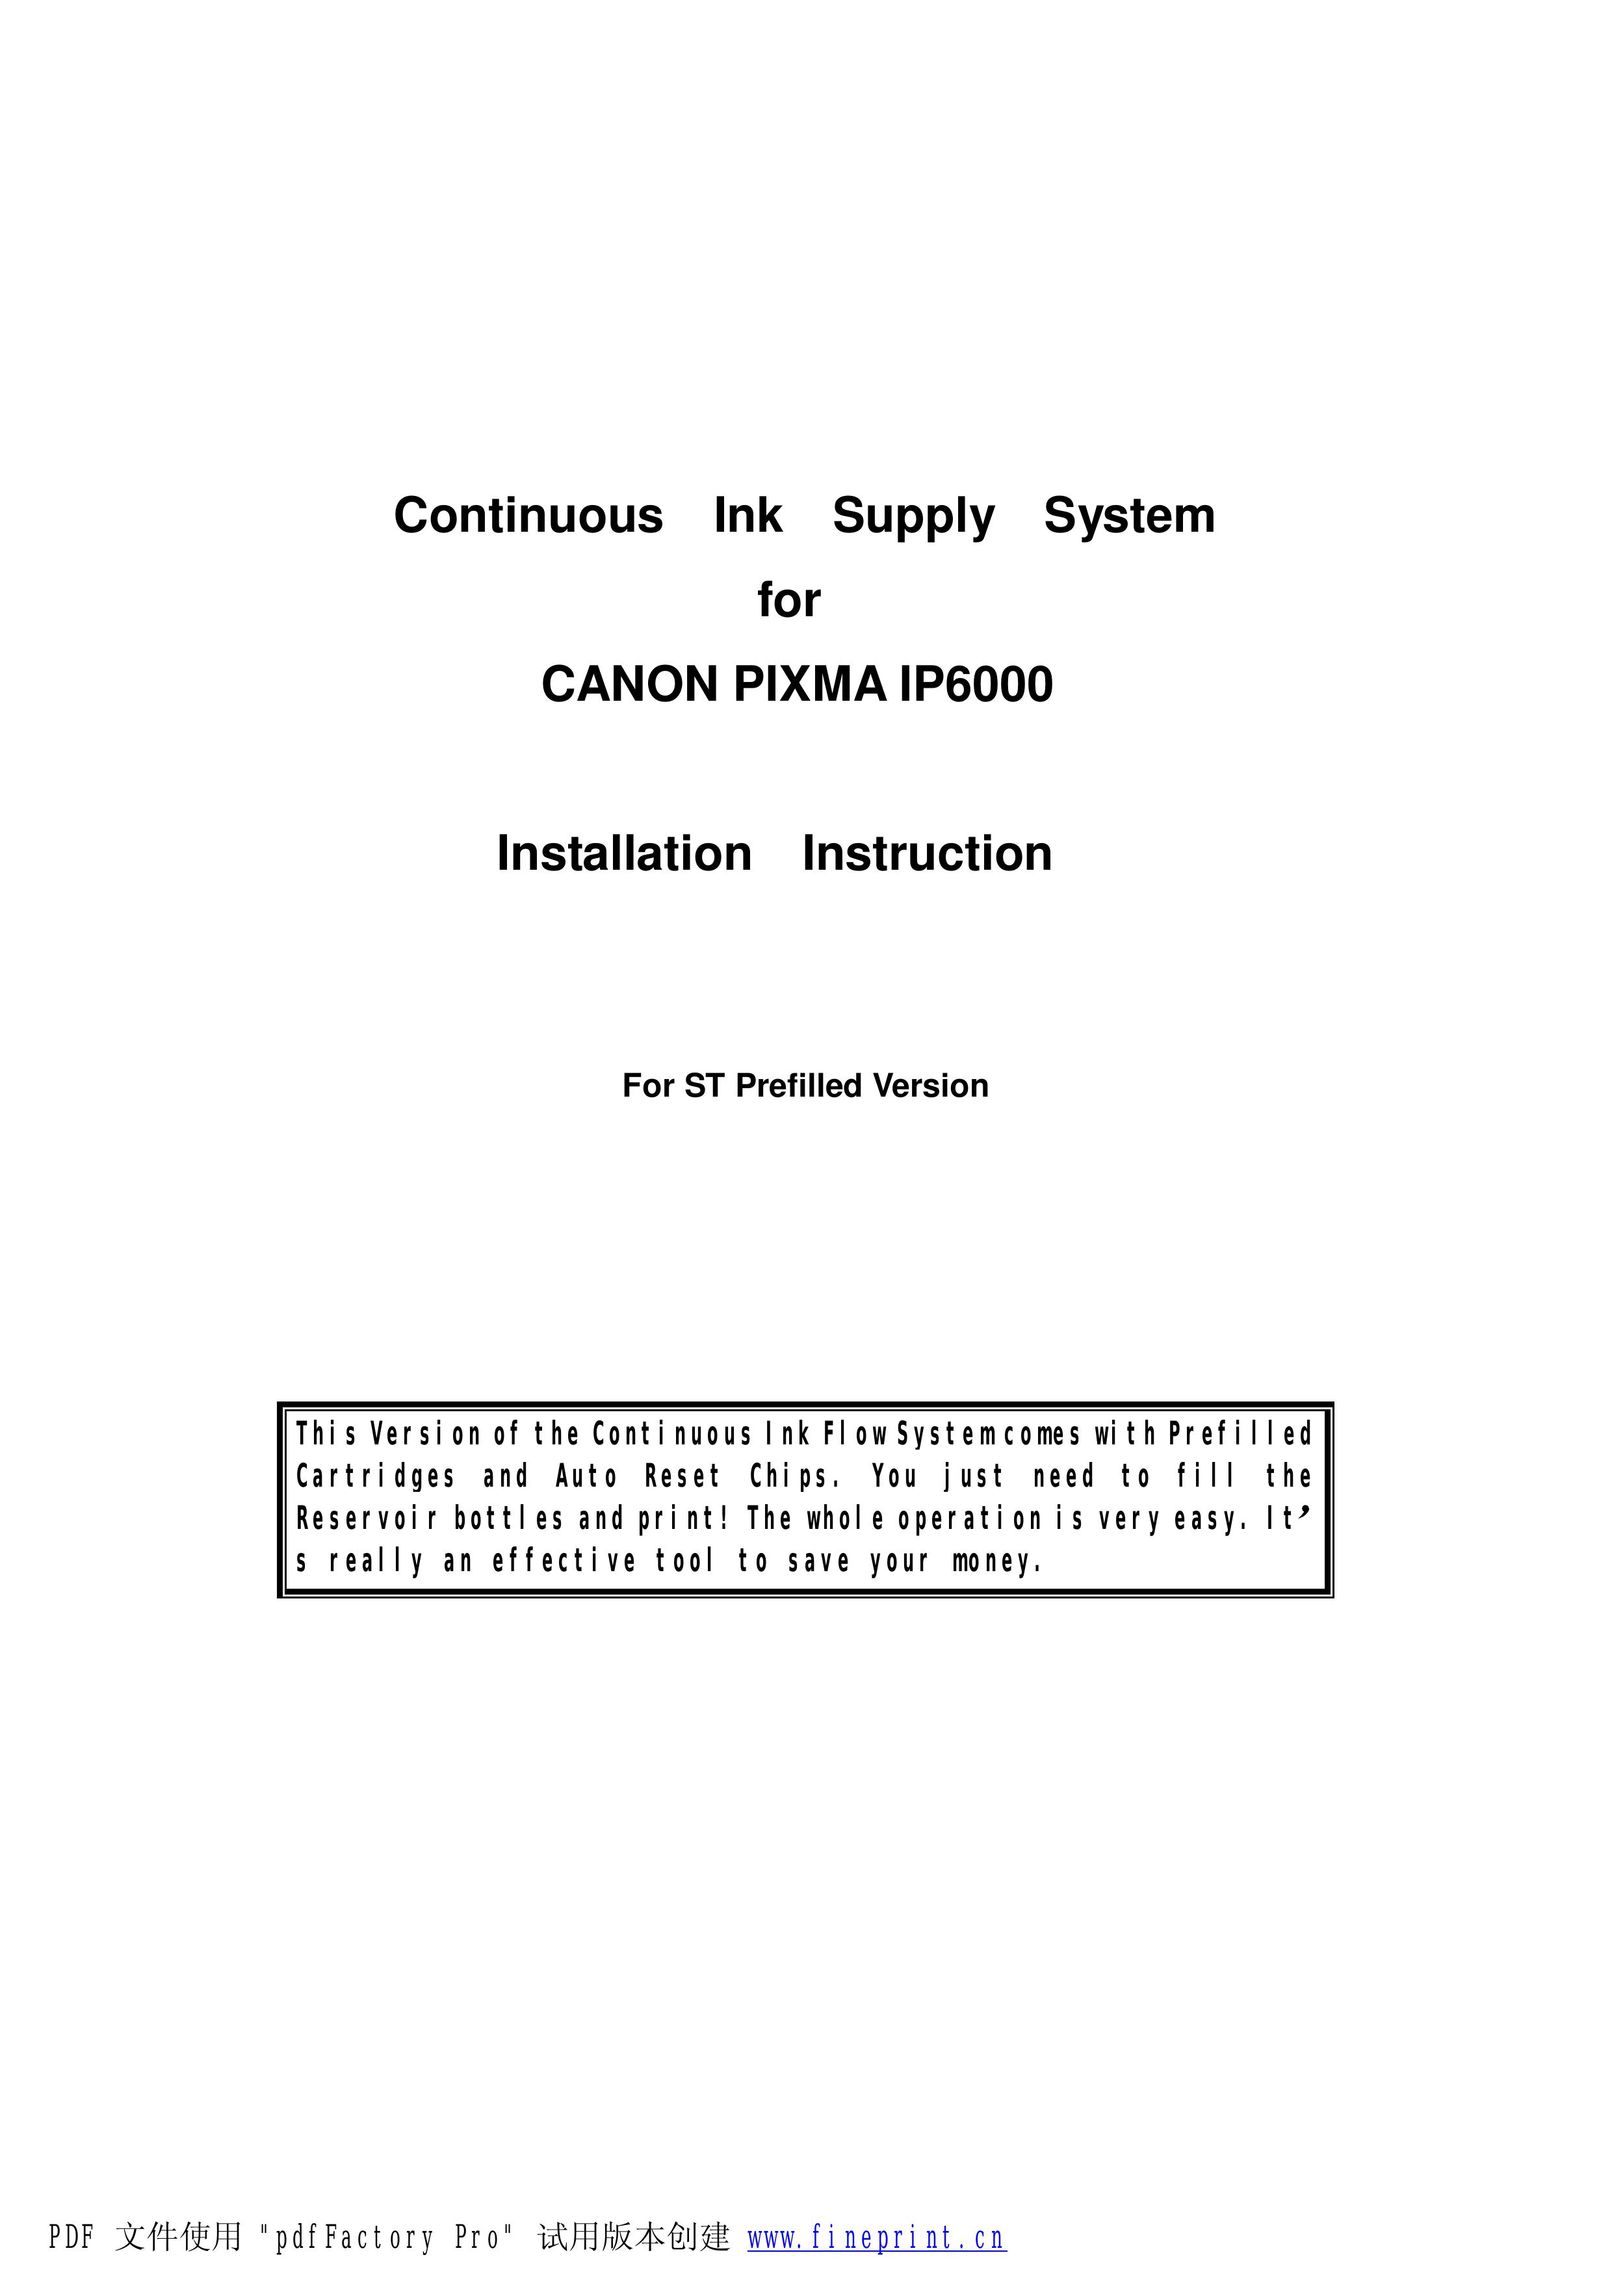 Canon Canon Pixma IP6000 Printer Accessories User Manual